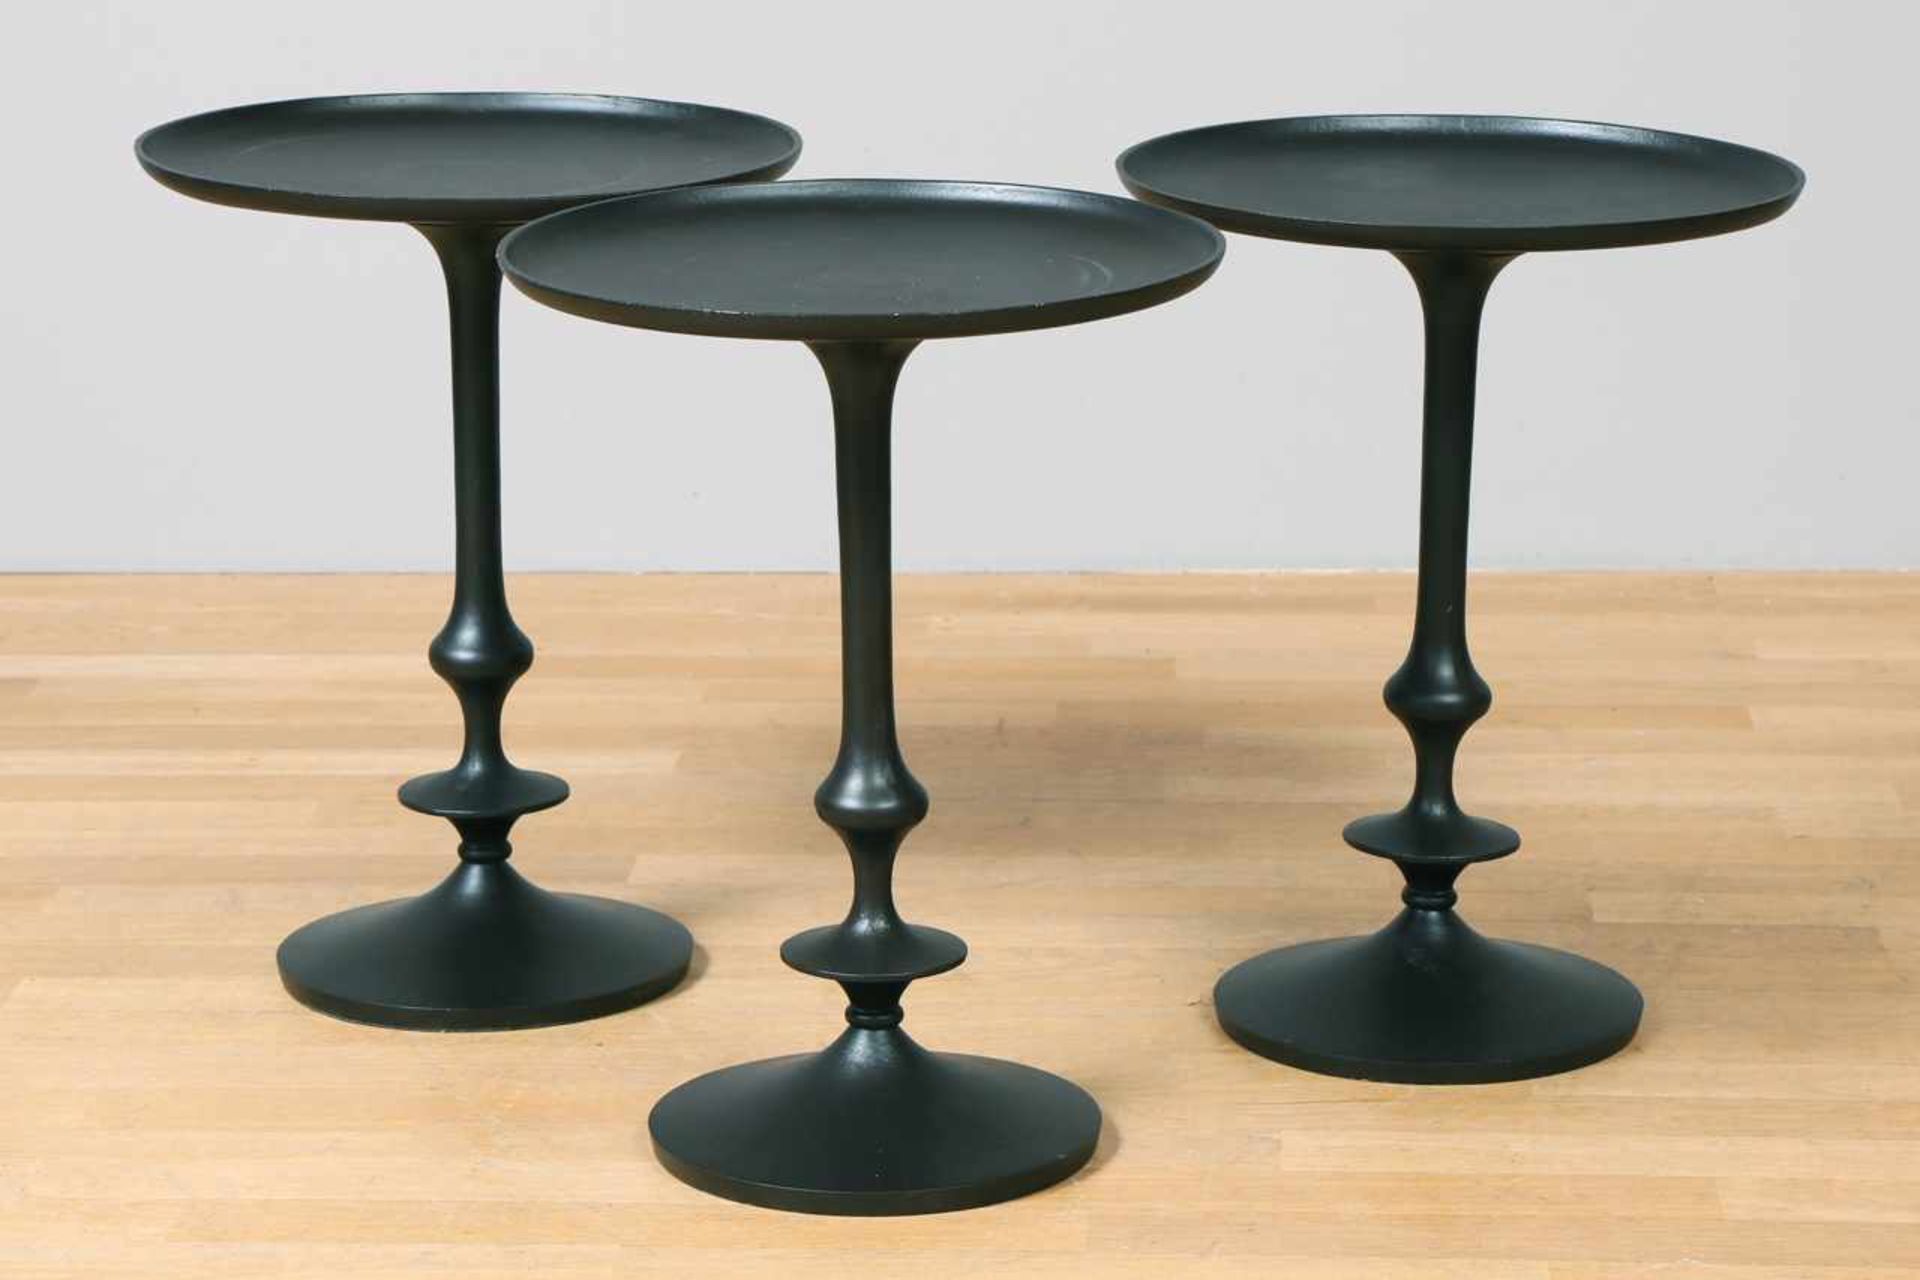 3 kleine Beistelltische (¨side tables¨) geschwärztes Metallgestell, mehrfach gegliederter